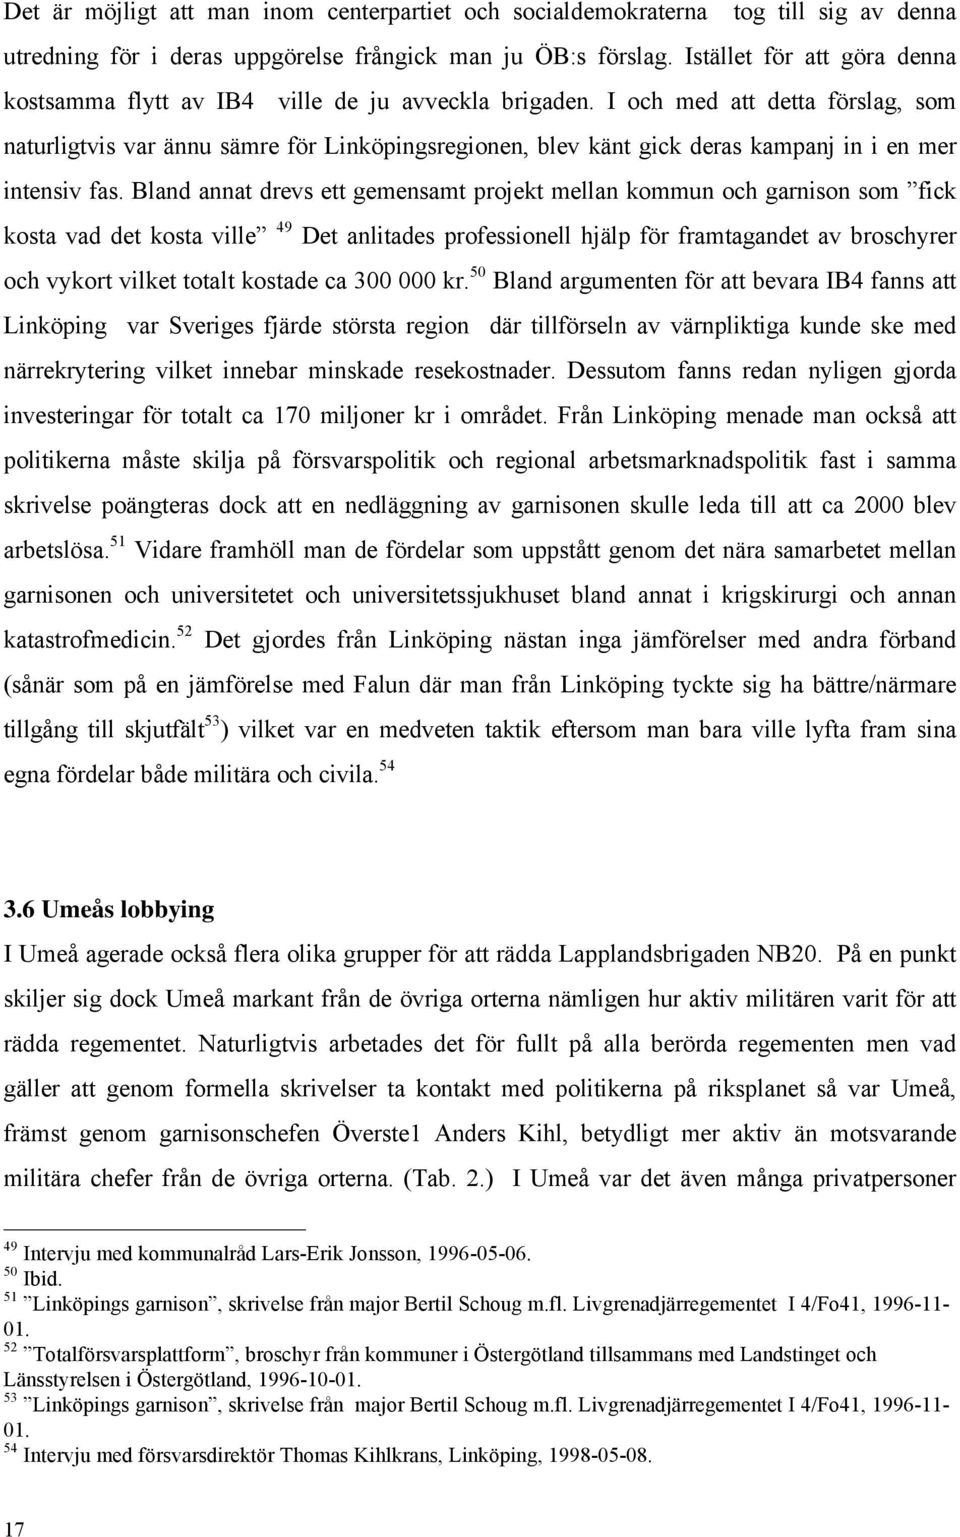 I och med att detta förslag, som naturligtvis var ännu sämre för Linköpingsregionen, blev känt gick deras kampanj in i en mer intensiv fas.